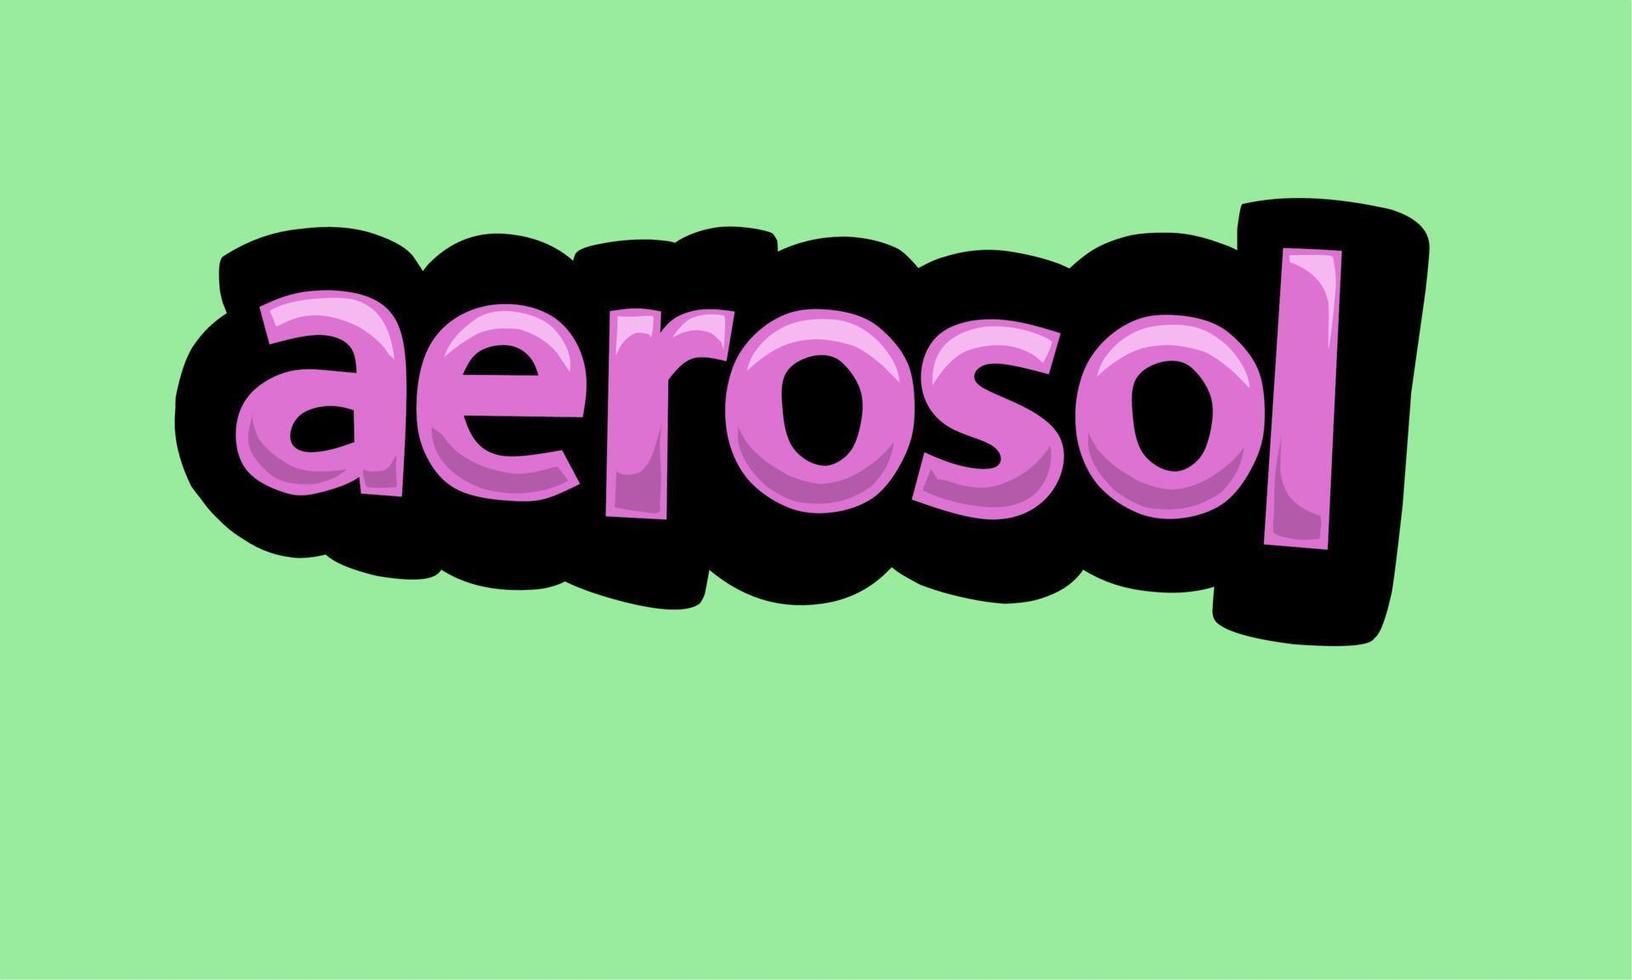 conception de vecteur d'écriture d'aérosol sur fond vert